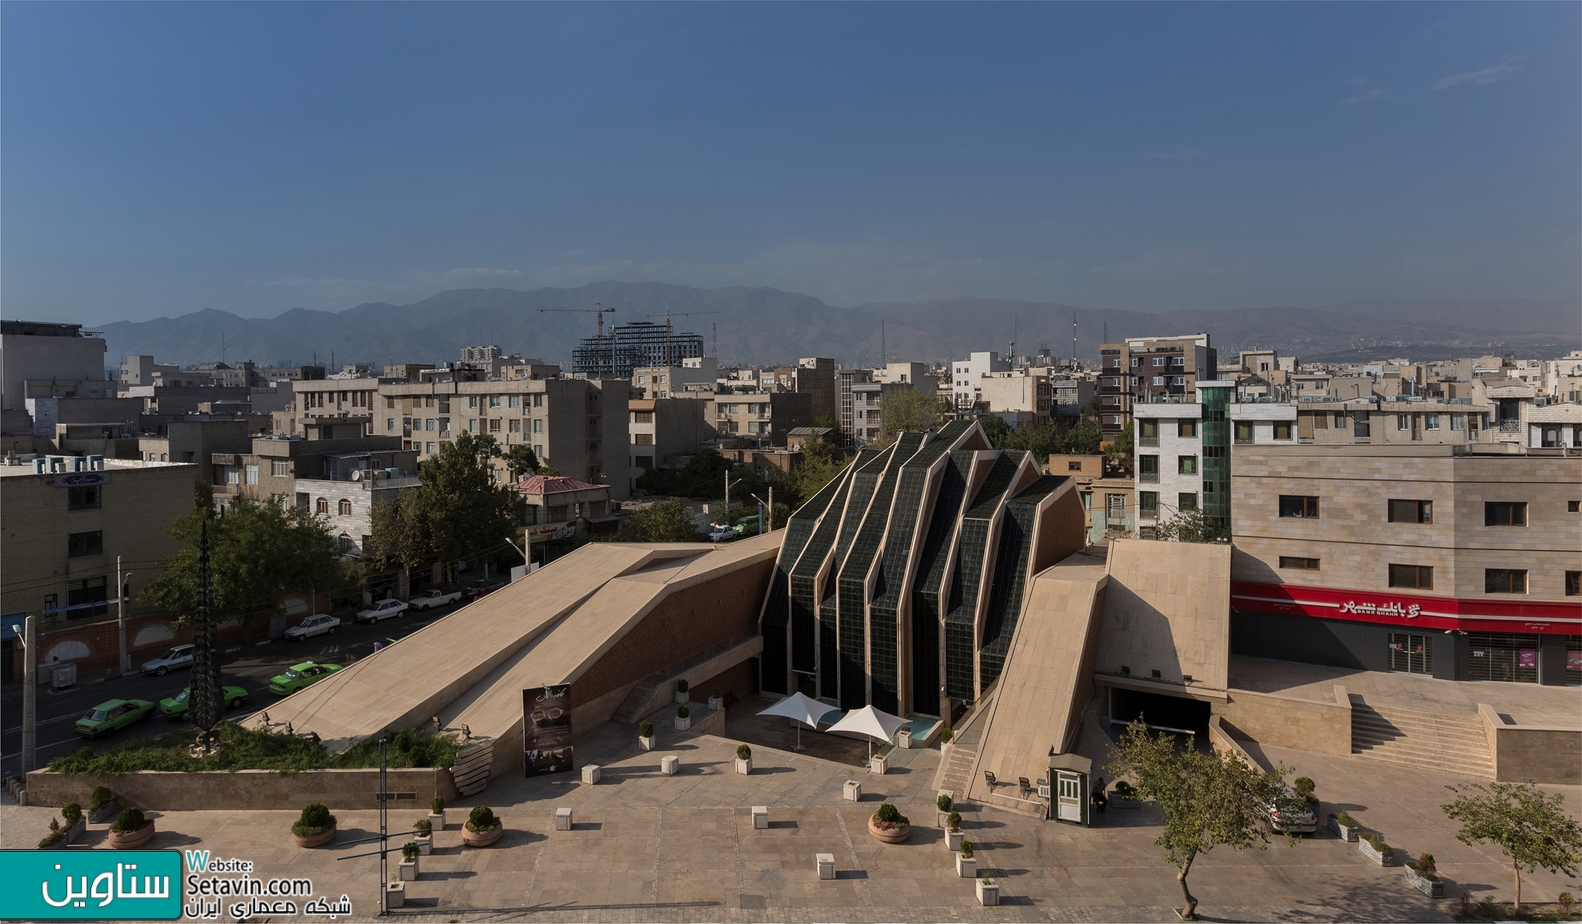 نگاهی به مجتمع فرهنگی مذهبی امام رضا در تهران